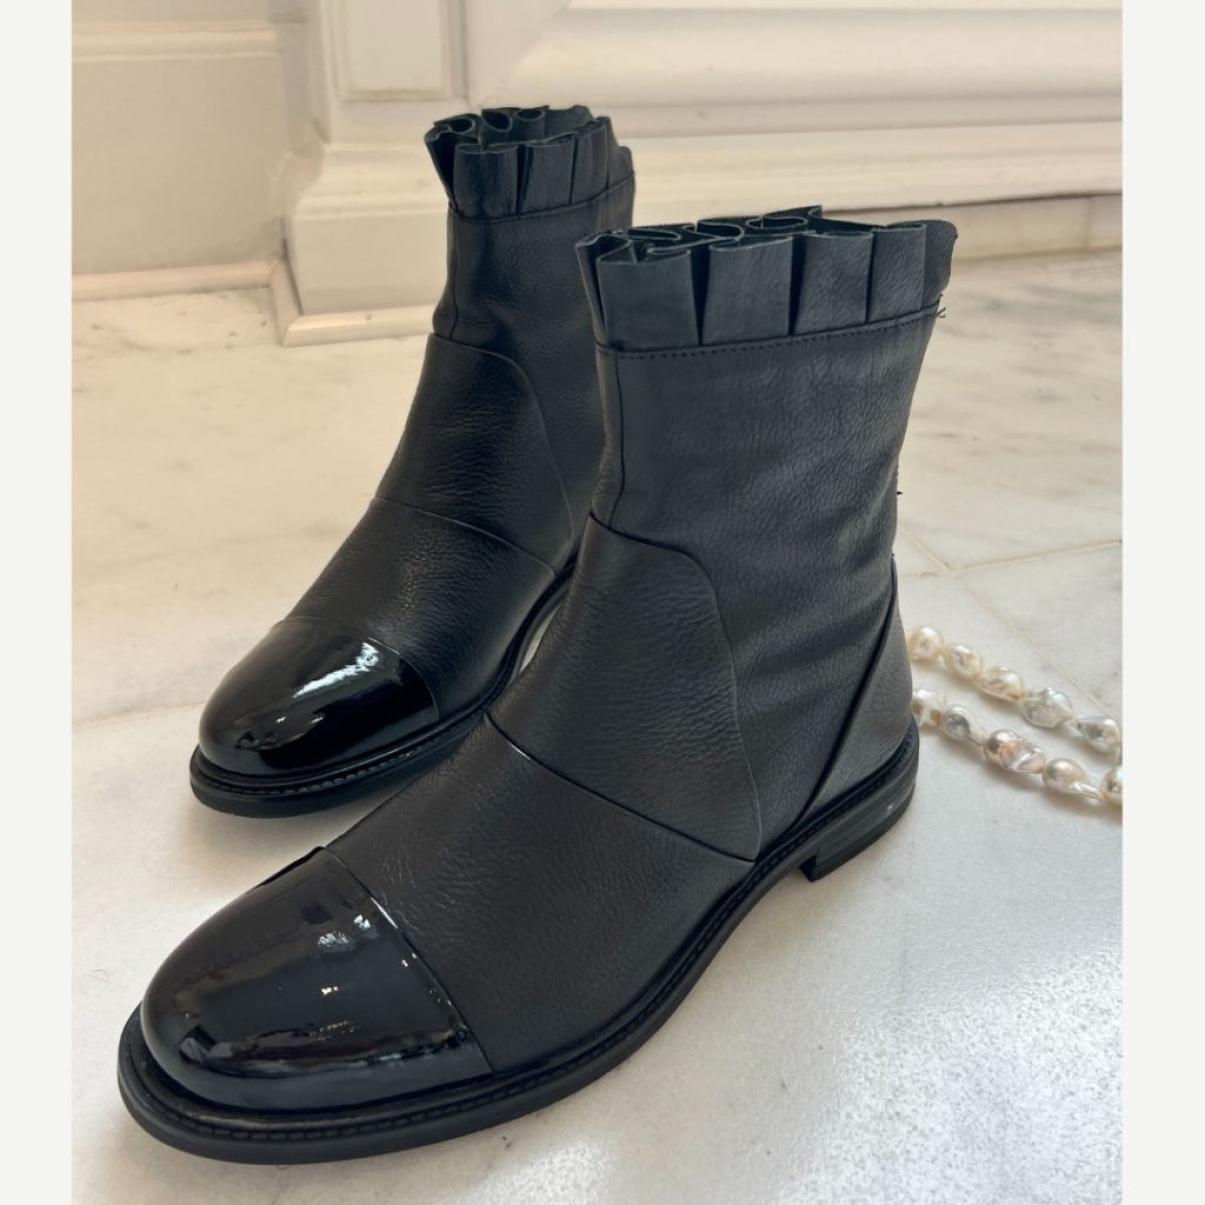 Ankle Boots Margaret - Black W/Patent Toe Top Copenhagen Shoes Women - 1